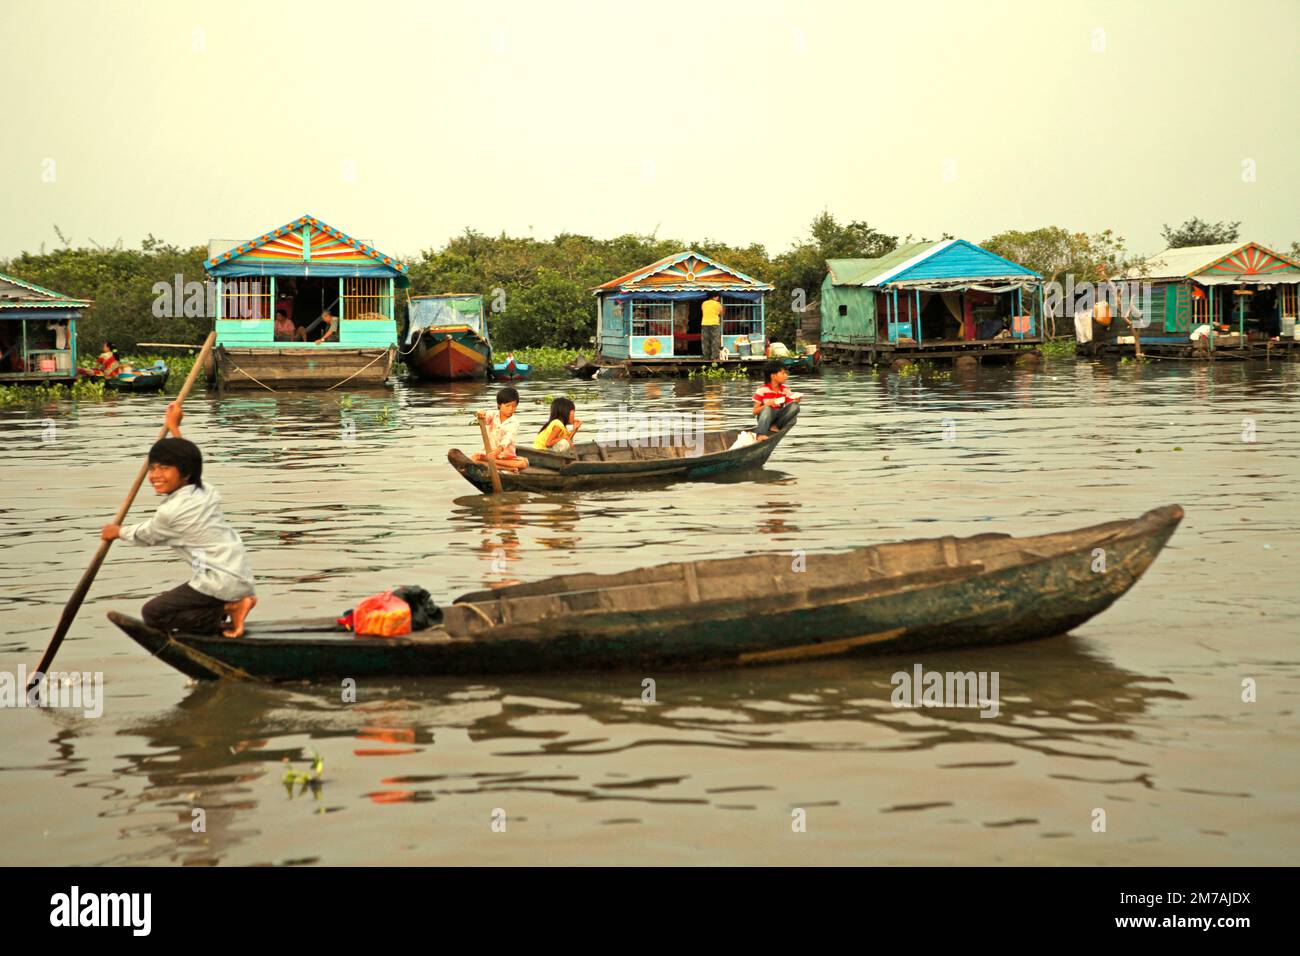 Bambini che viaggiano in barca in uno sfondo di case galleggianti di un villaggio su Tonle SAP, il più grande lago d'acqua dolce della Cambogia, in questa foto del 2013. Almeno dal novembre 2021, le autorità cambogiane stanno cercando di proteggere più strettamente le risorse naturali della zona, compresi i santuari dei pesci, il Phnom Penh Post ha riferito il 3 gennaio 2023. I crimini di pesca nella zona saranno nuovamente soppressi nel 2023, a seguito di campagne riuscite che hanno portato ad un aumento della produzione di pesca lo scorso anno. Foto Stock